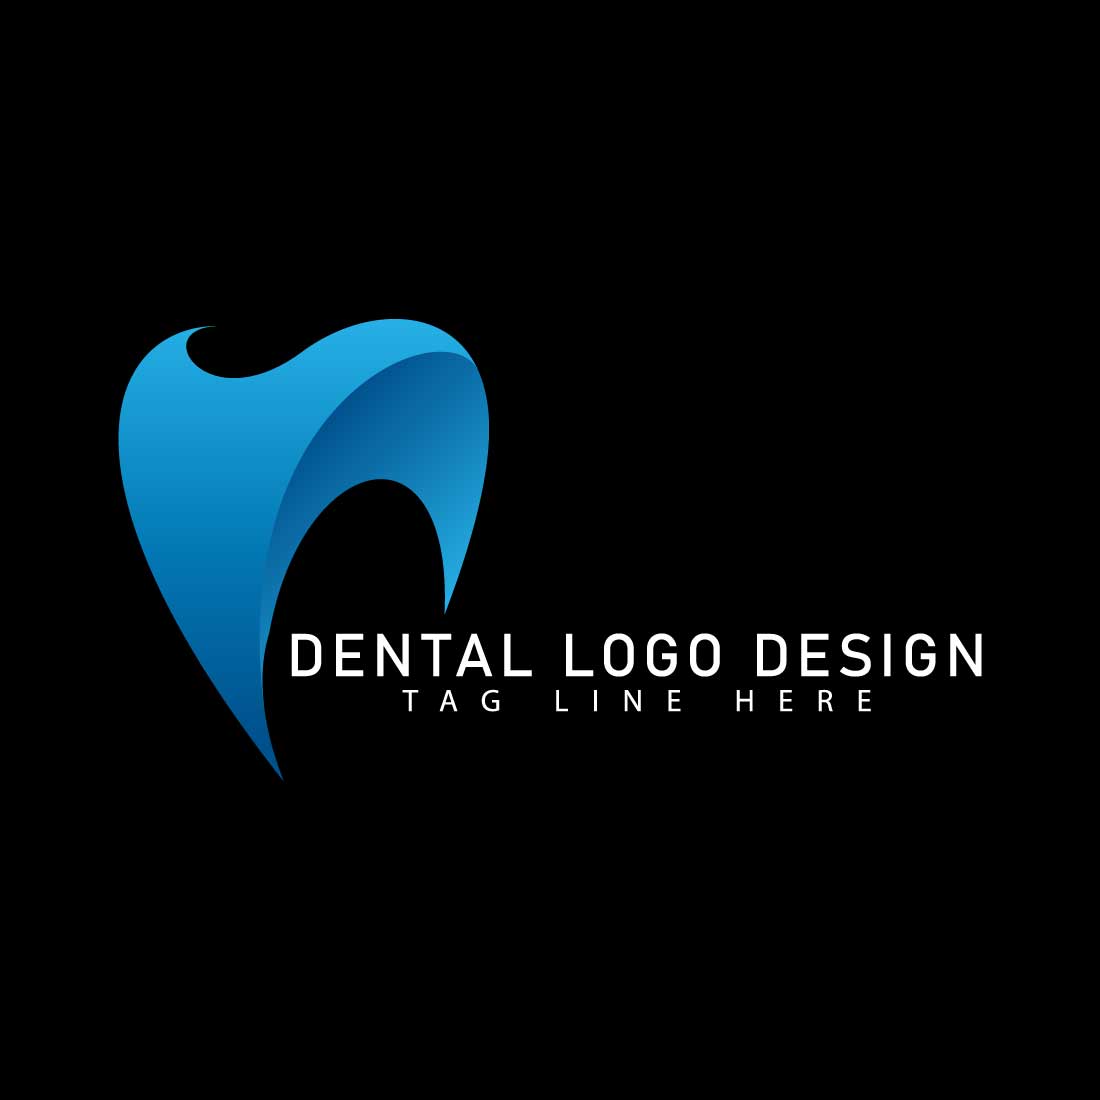 Dental Logo Design EPS SVG cover image.